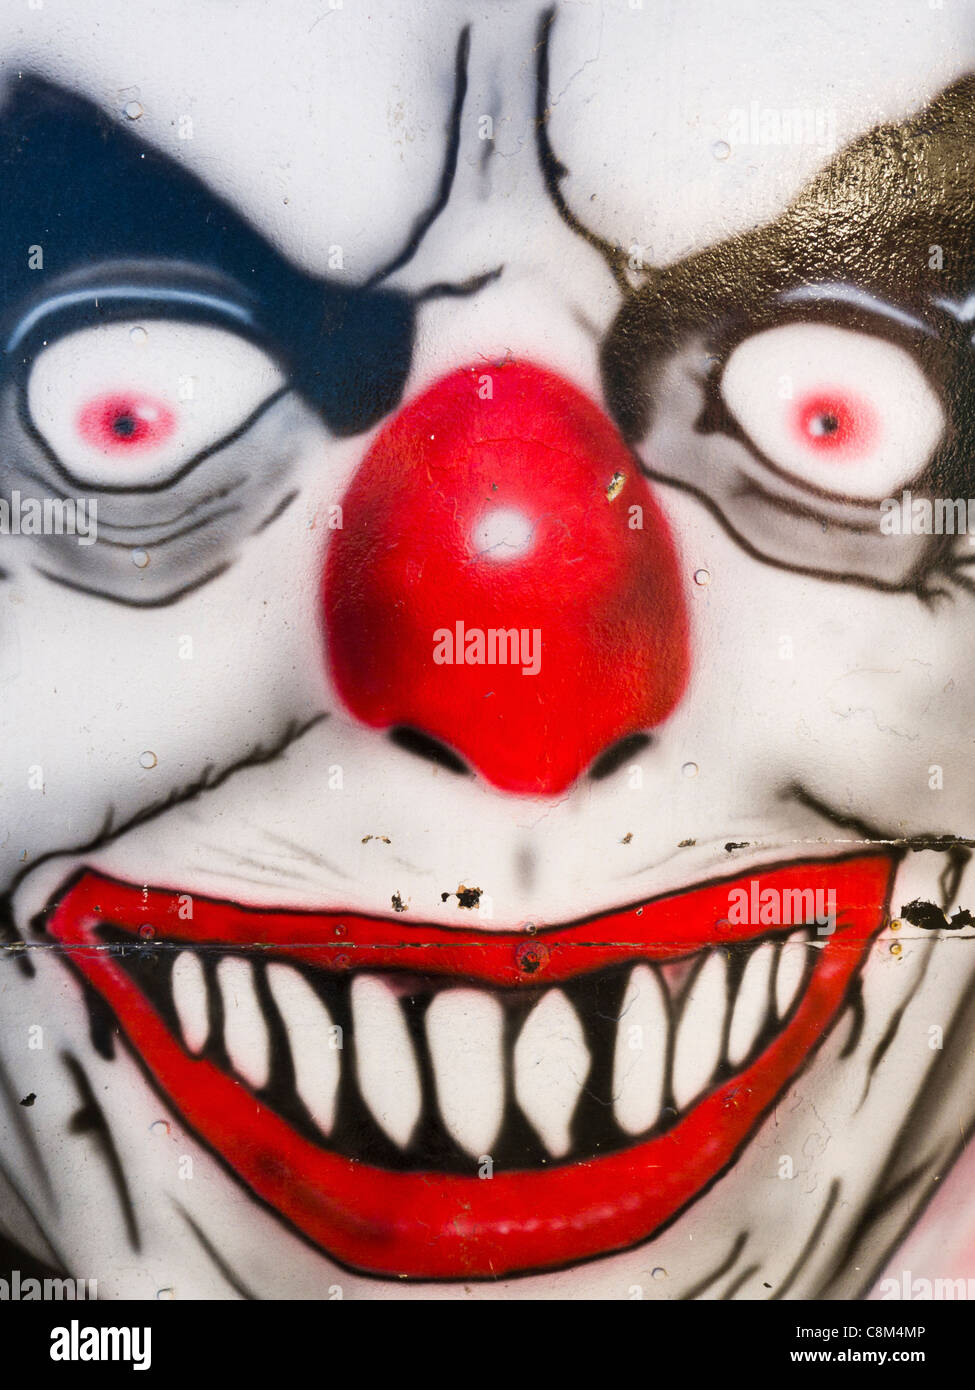 Eine böse Clowns-Gesicht gemalt am Gehäuse für eine Geisterbahn. Stockfoto